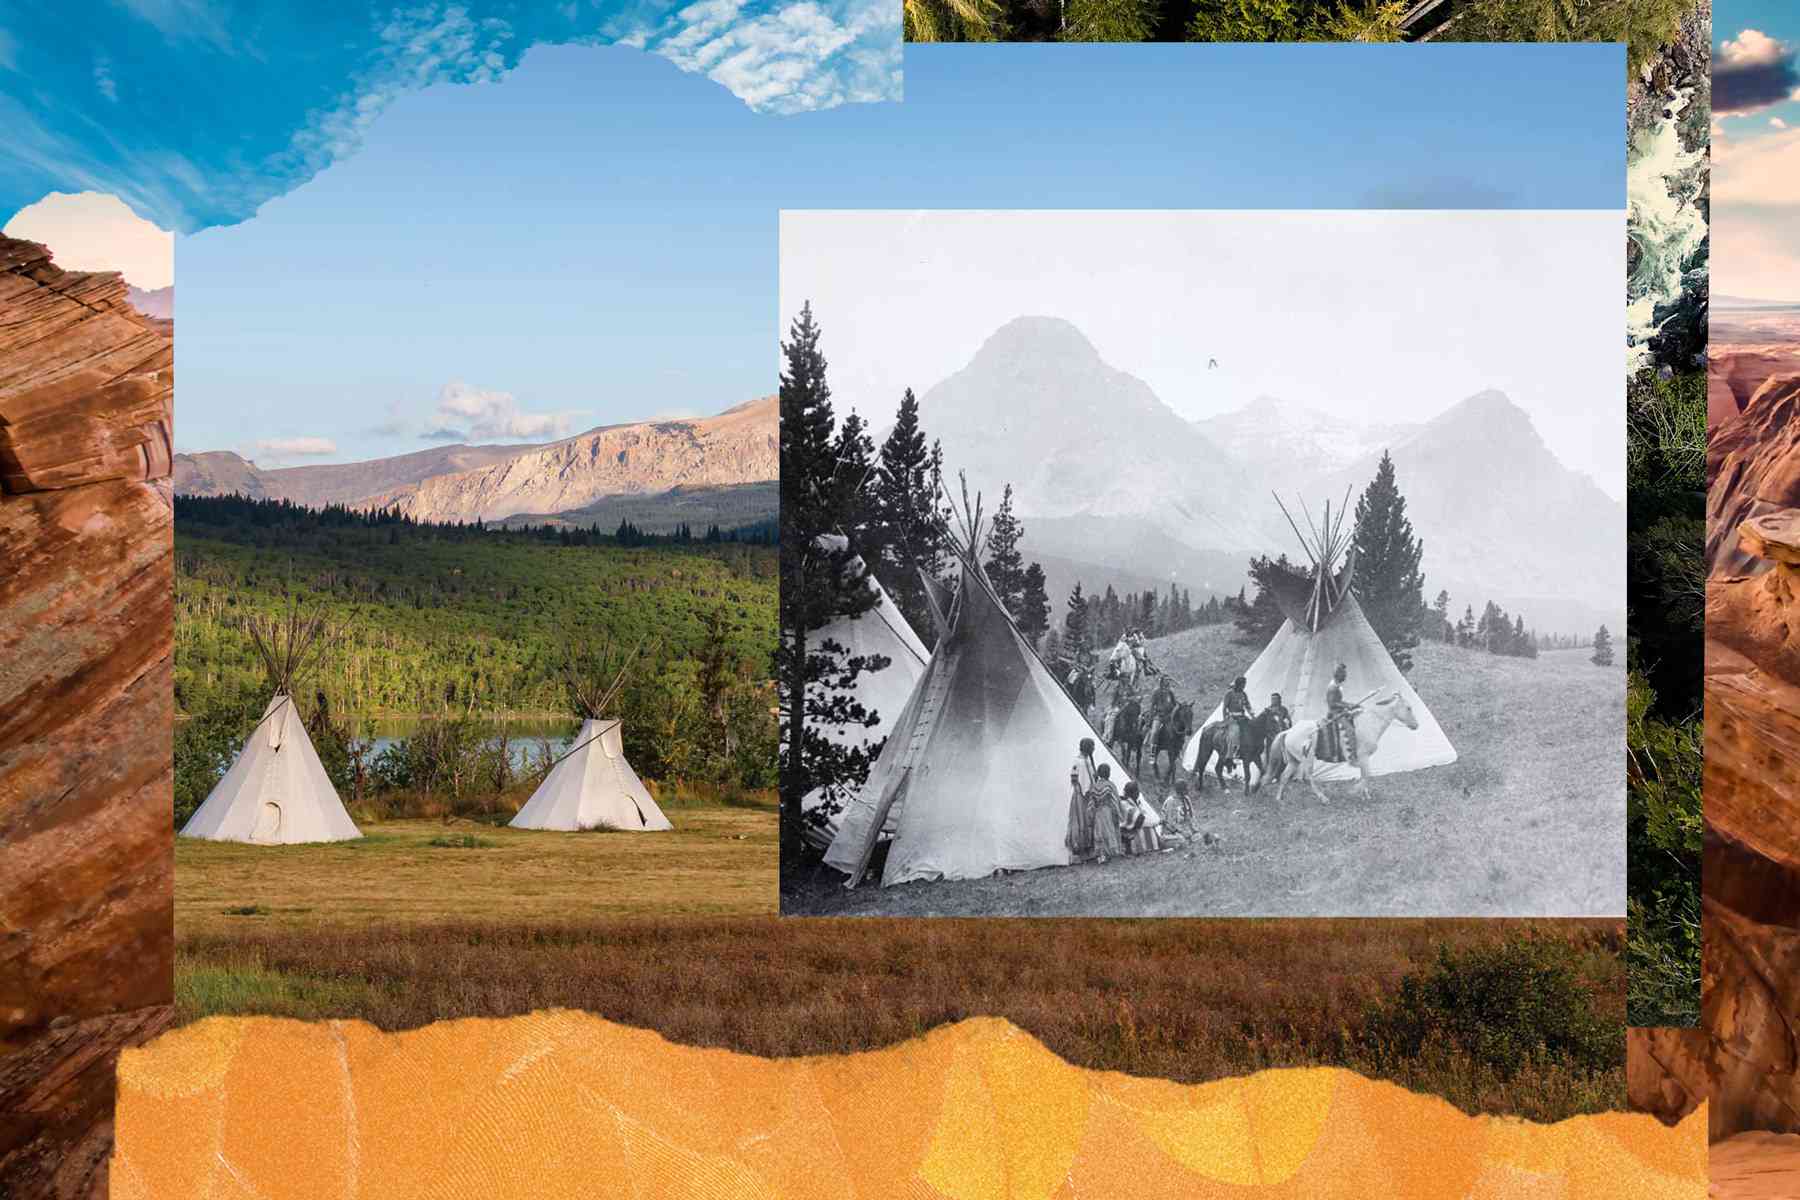 Image en couleur du parc national des Glaciers avec des tipis au premier plan avec une vieille photo superposée pour montrer comment la tribu Blackfeet vivait sur la terre